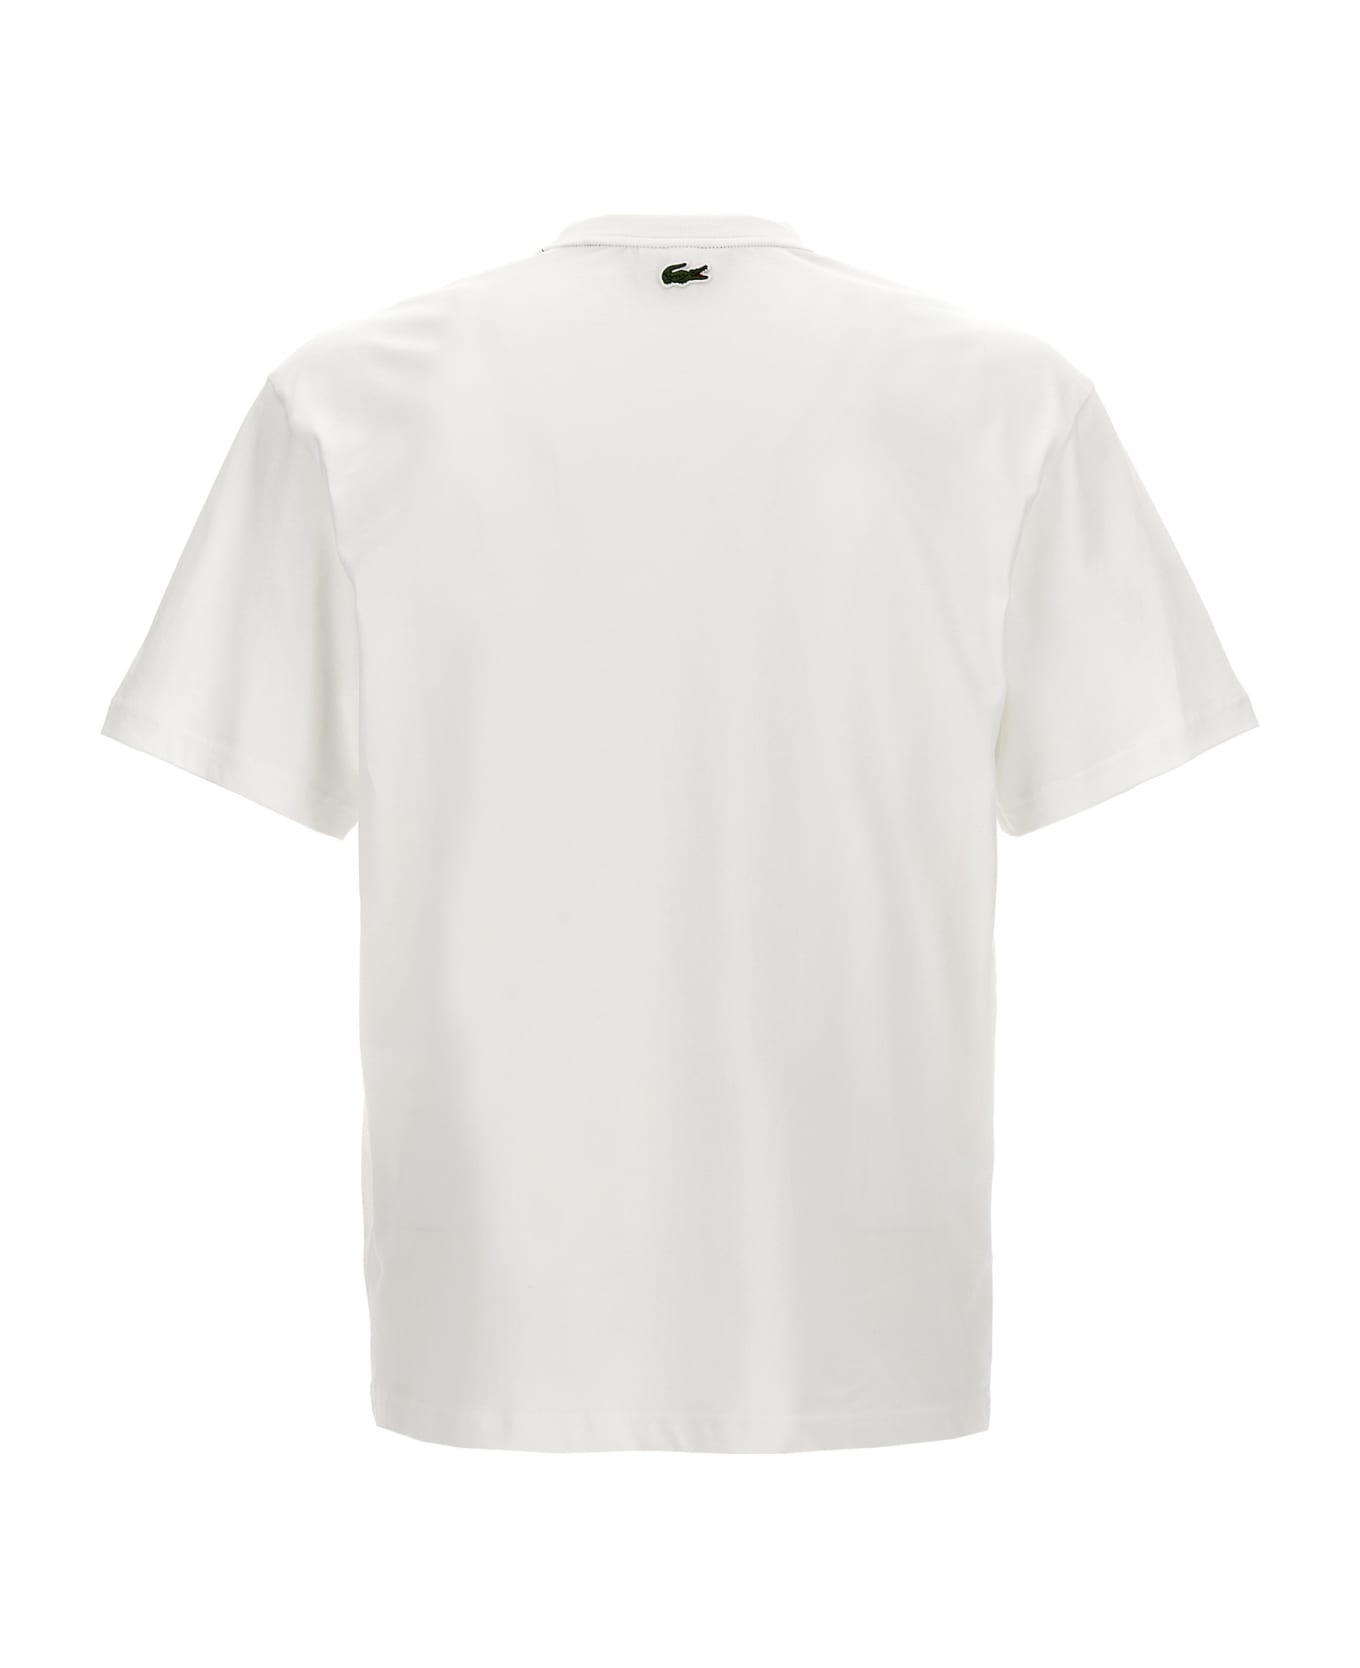 Lacoste Logo Print T-shirt - White